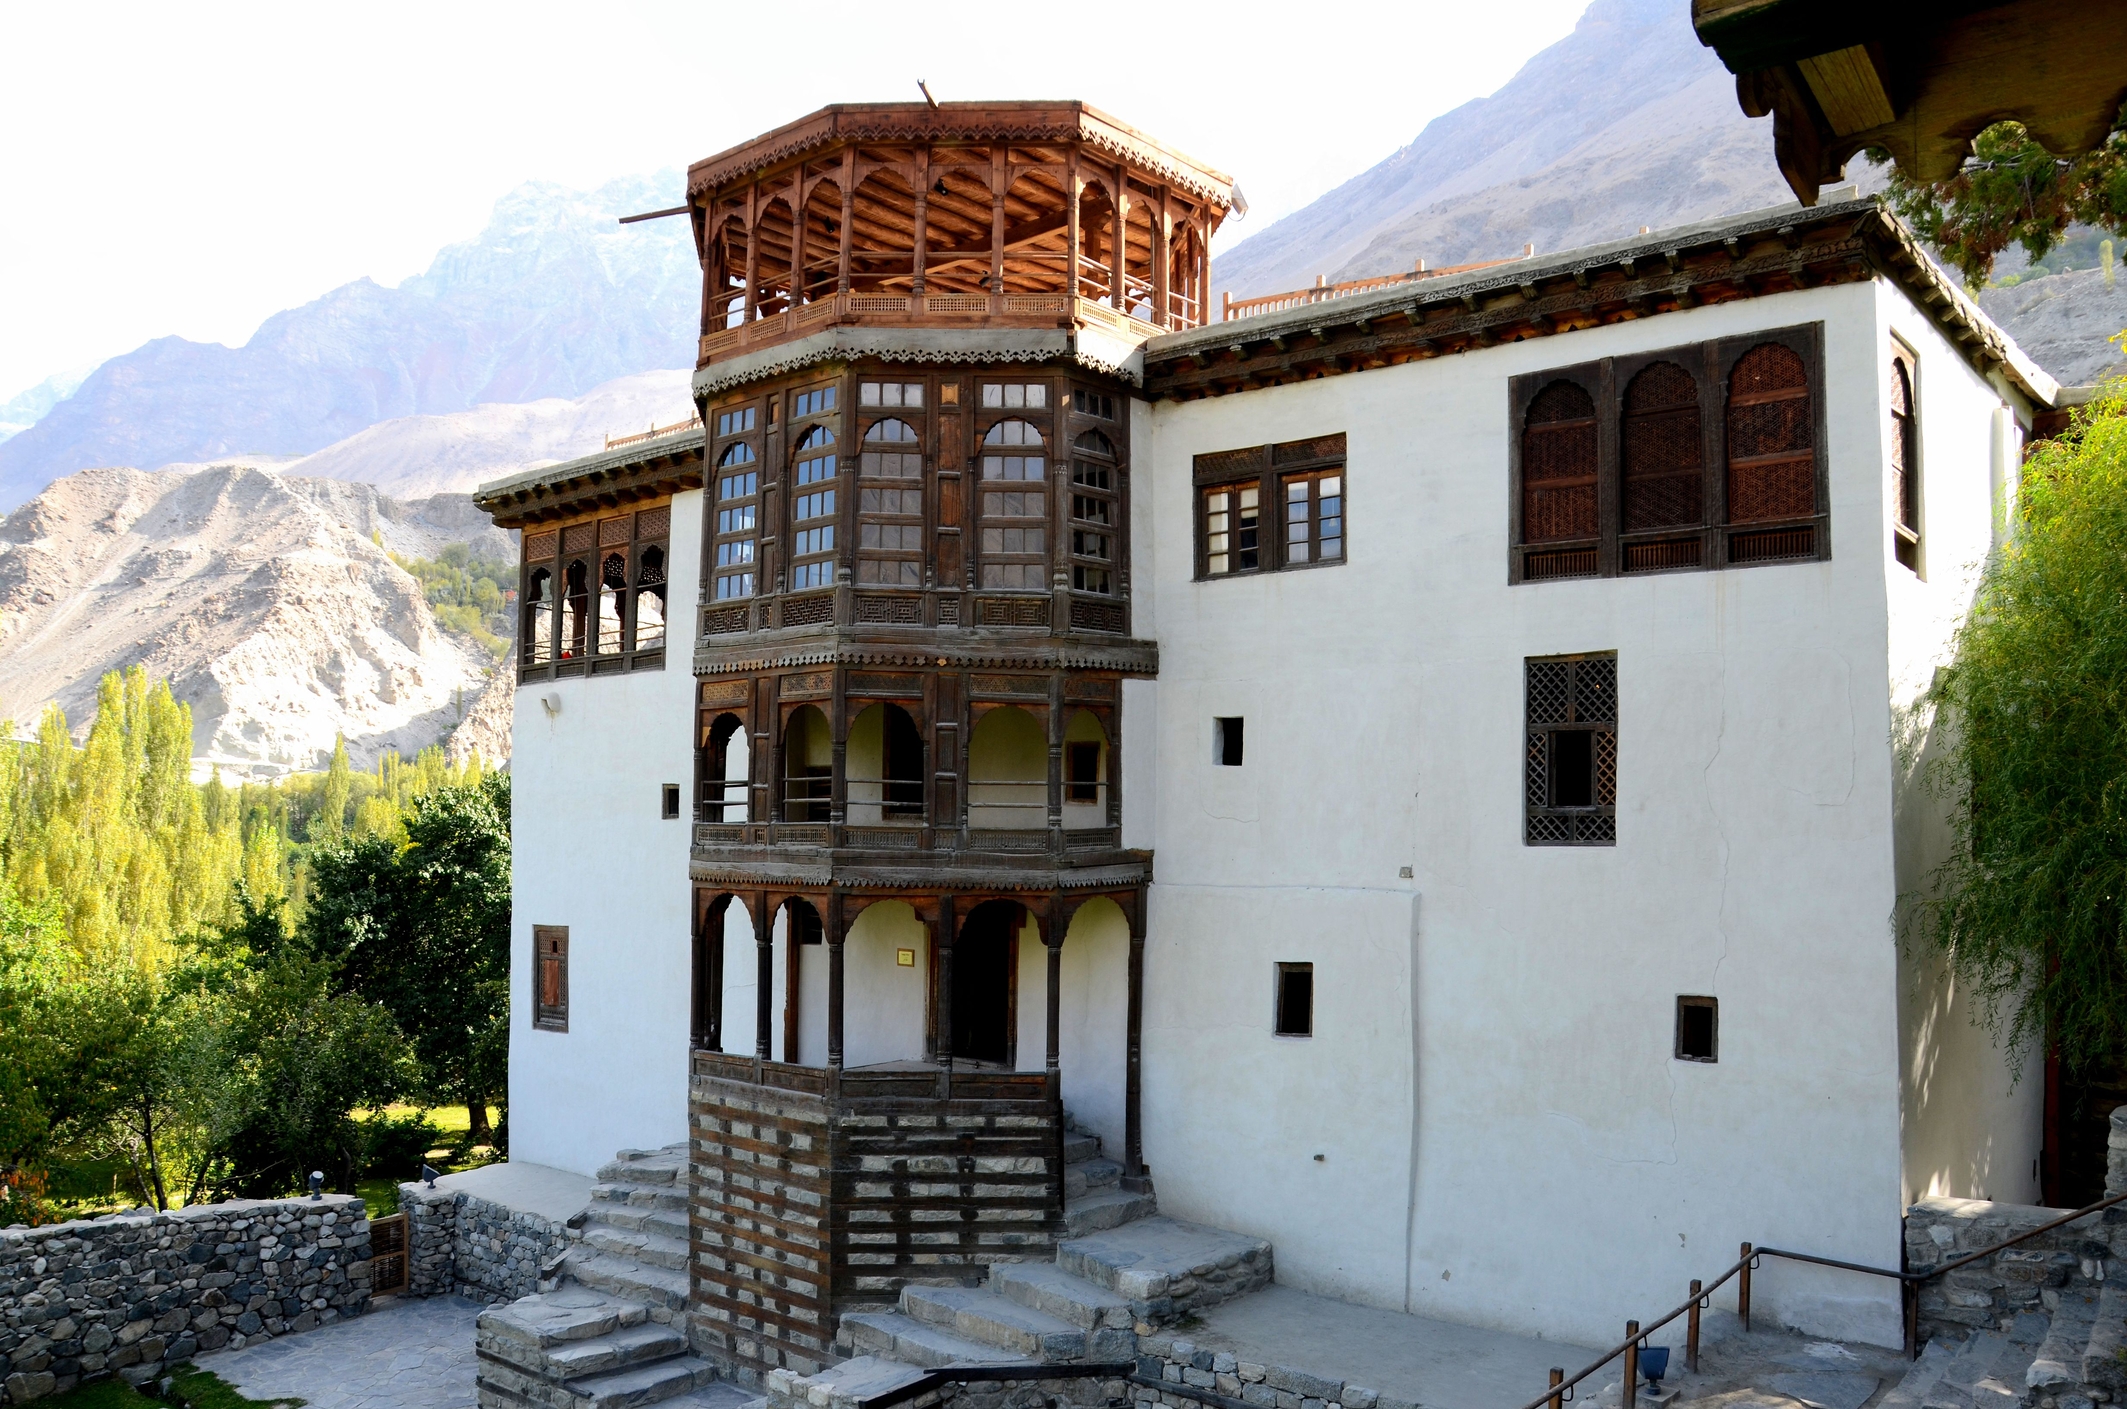 Khaplu Palace